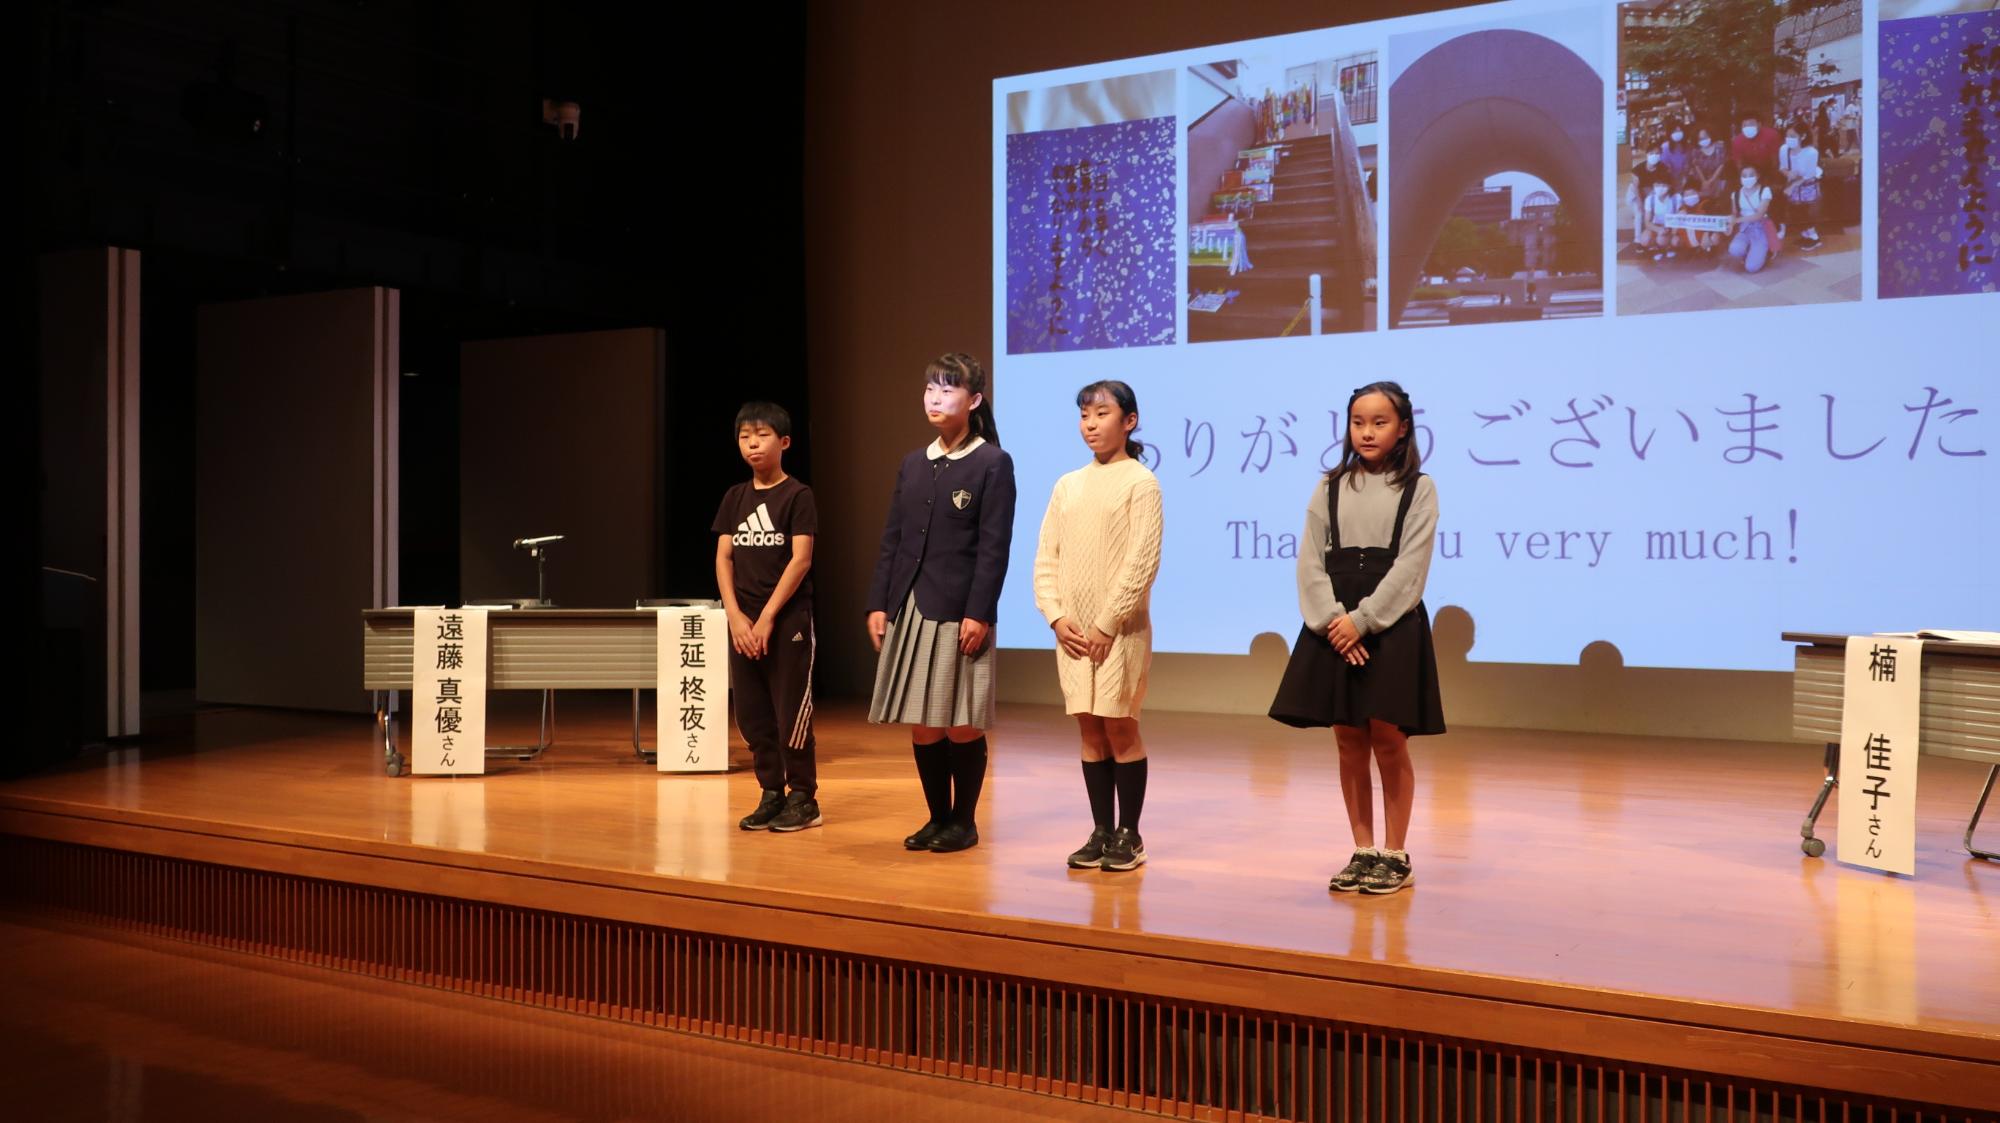 広島平和学習報告会発表後の挨拶の様子。壇上で4人の児童が横並びになり挨拶をしている様子。